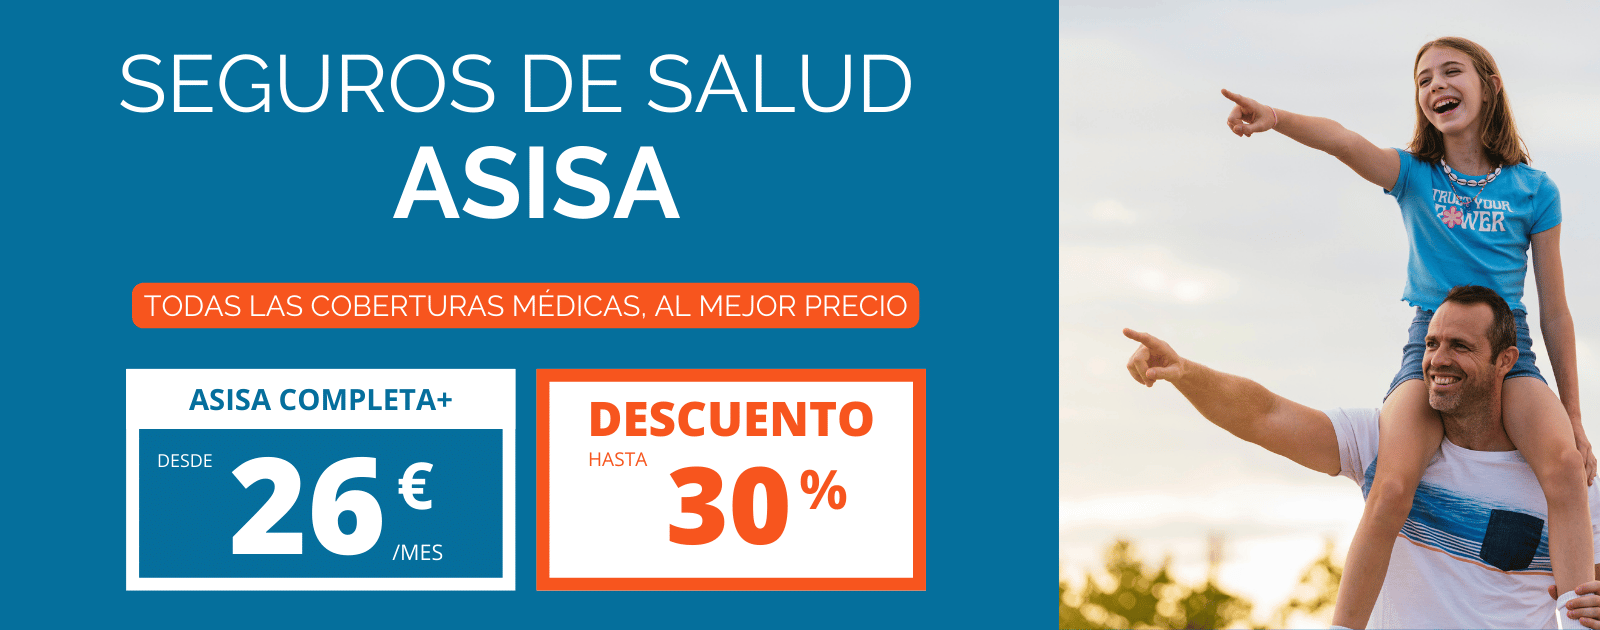 ASISA SALUD DESCUENTOS HASTA 30%